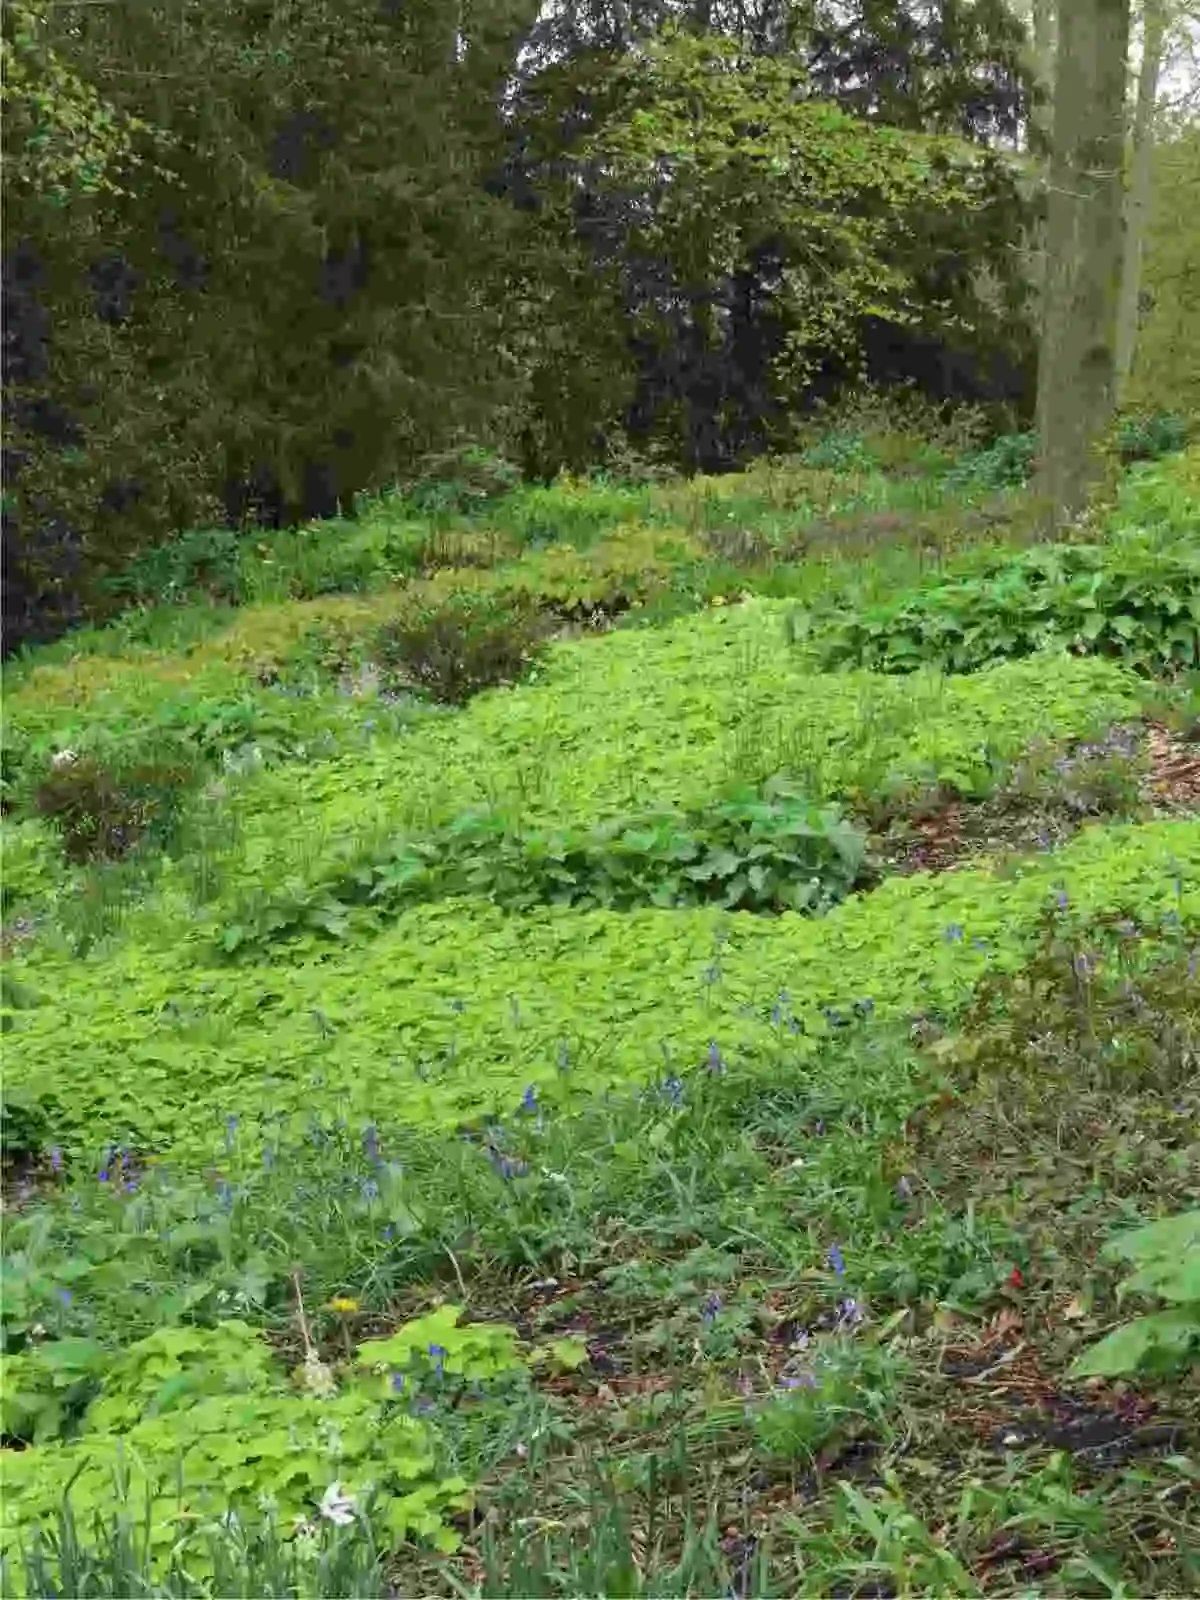  Lo stupendo giardino ombroso di Chatsworth House in Inghilterra. Qui il progettista Tom Stuarth-Smith ha giocato con le texture del fogliame per creare un giardino sotto le chiome degli alberi.